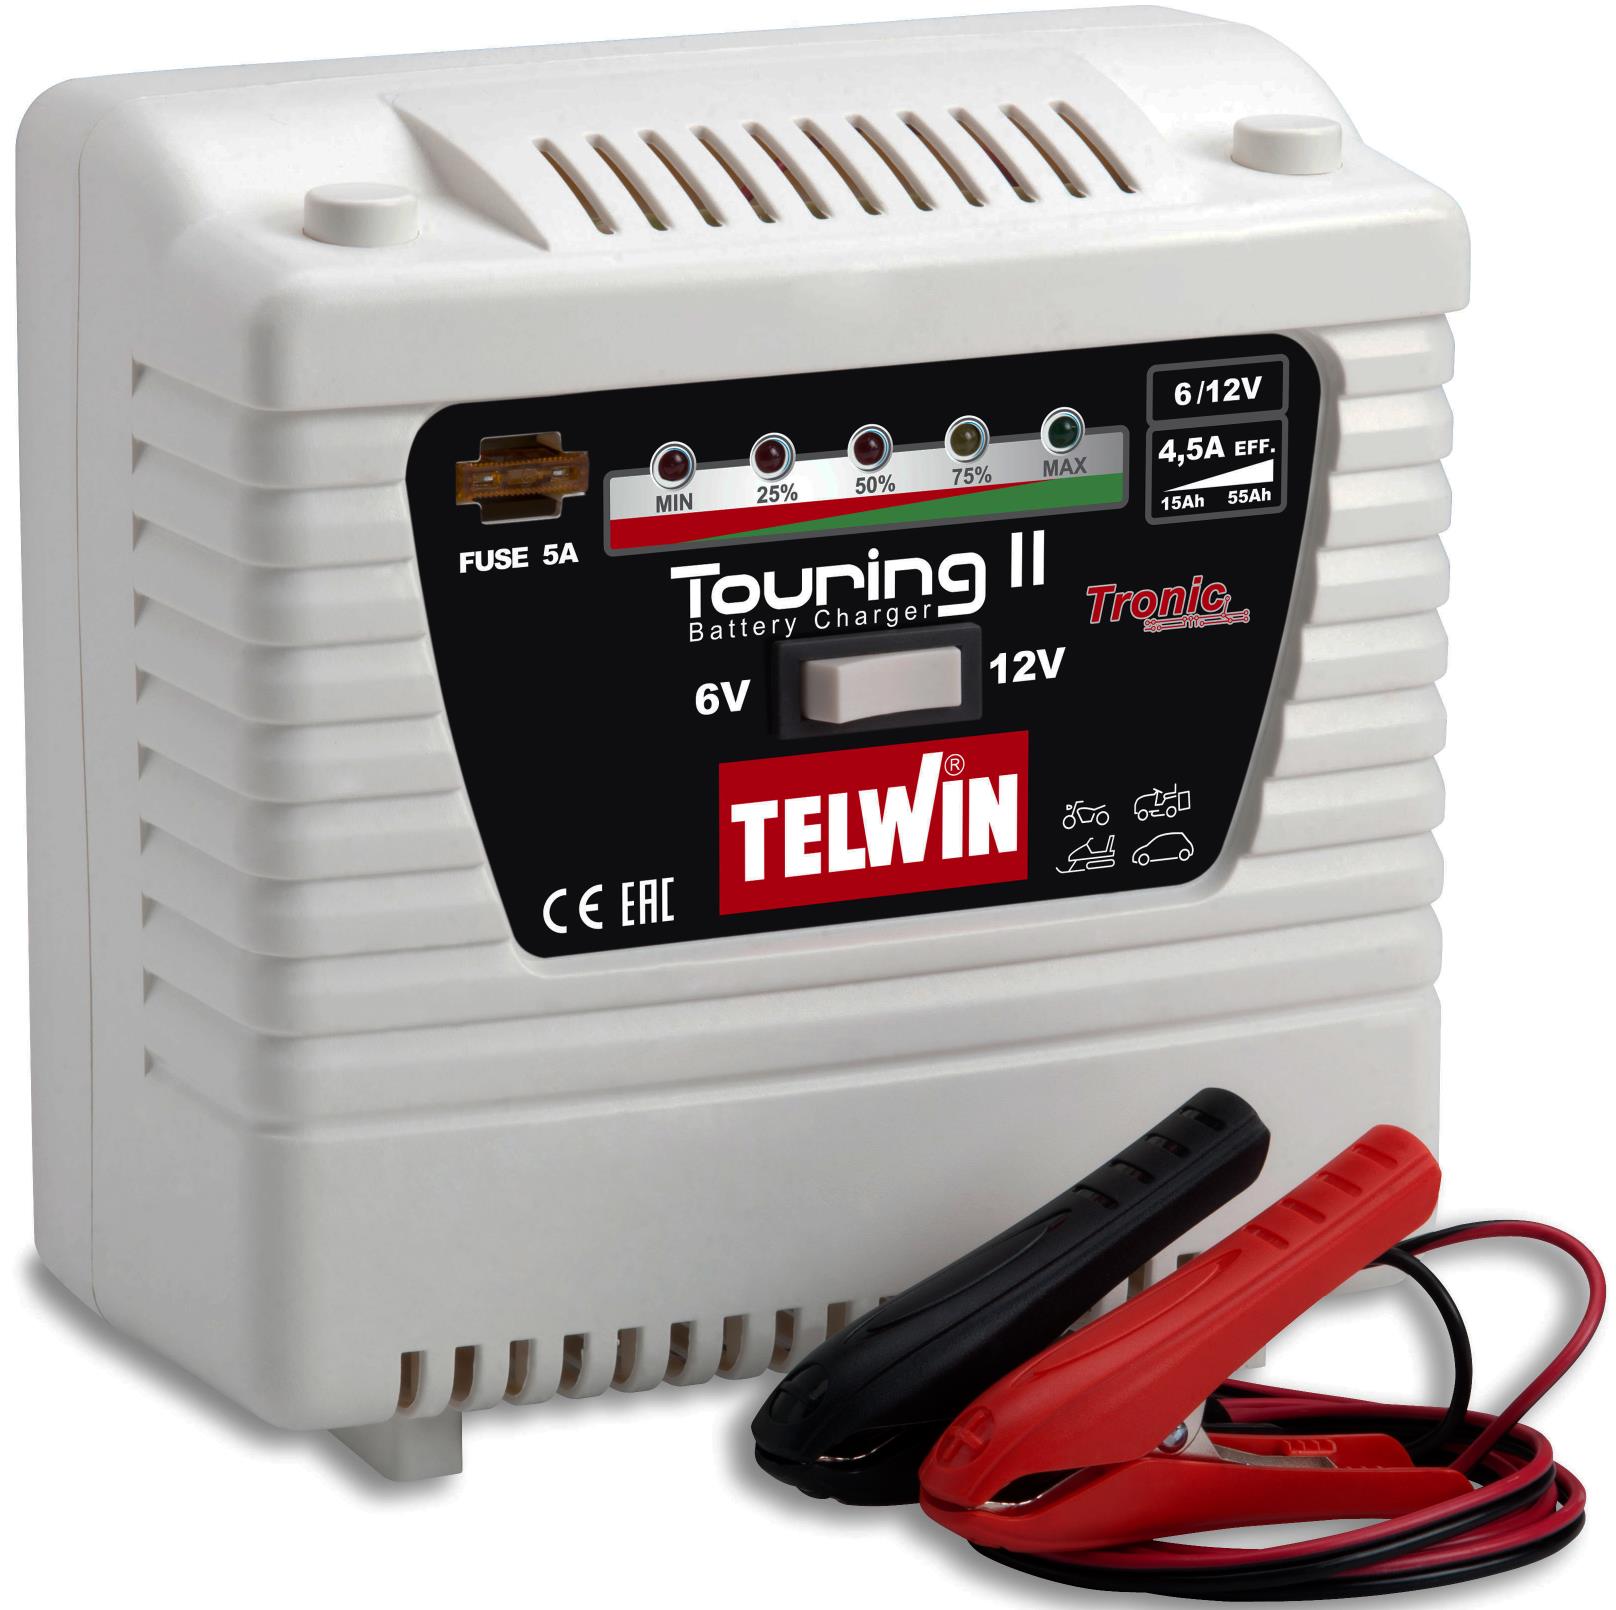 Chargeur de batterie Telwin Touring 11_4600.jpg